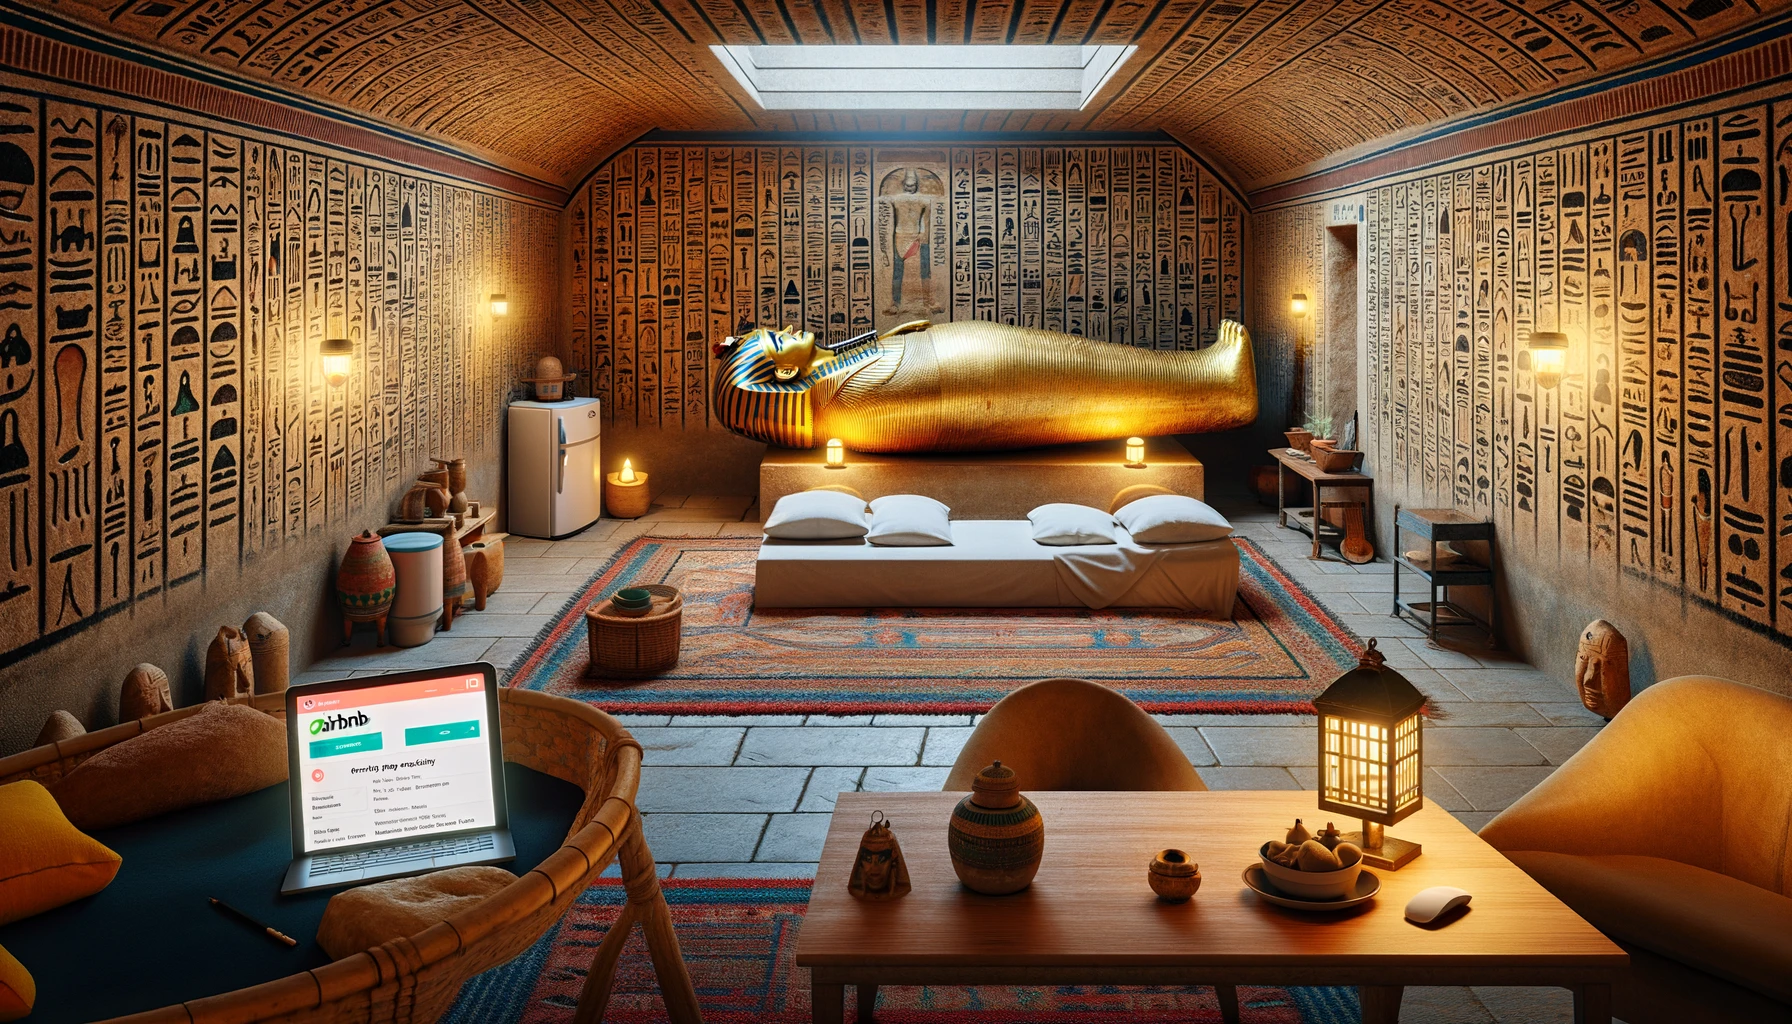 tutankhamun-tomb-reaches-airbnb-rental-due-to-housing-crisis-egypt-csdn